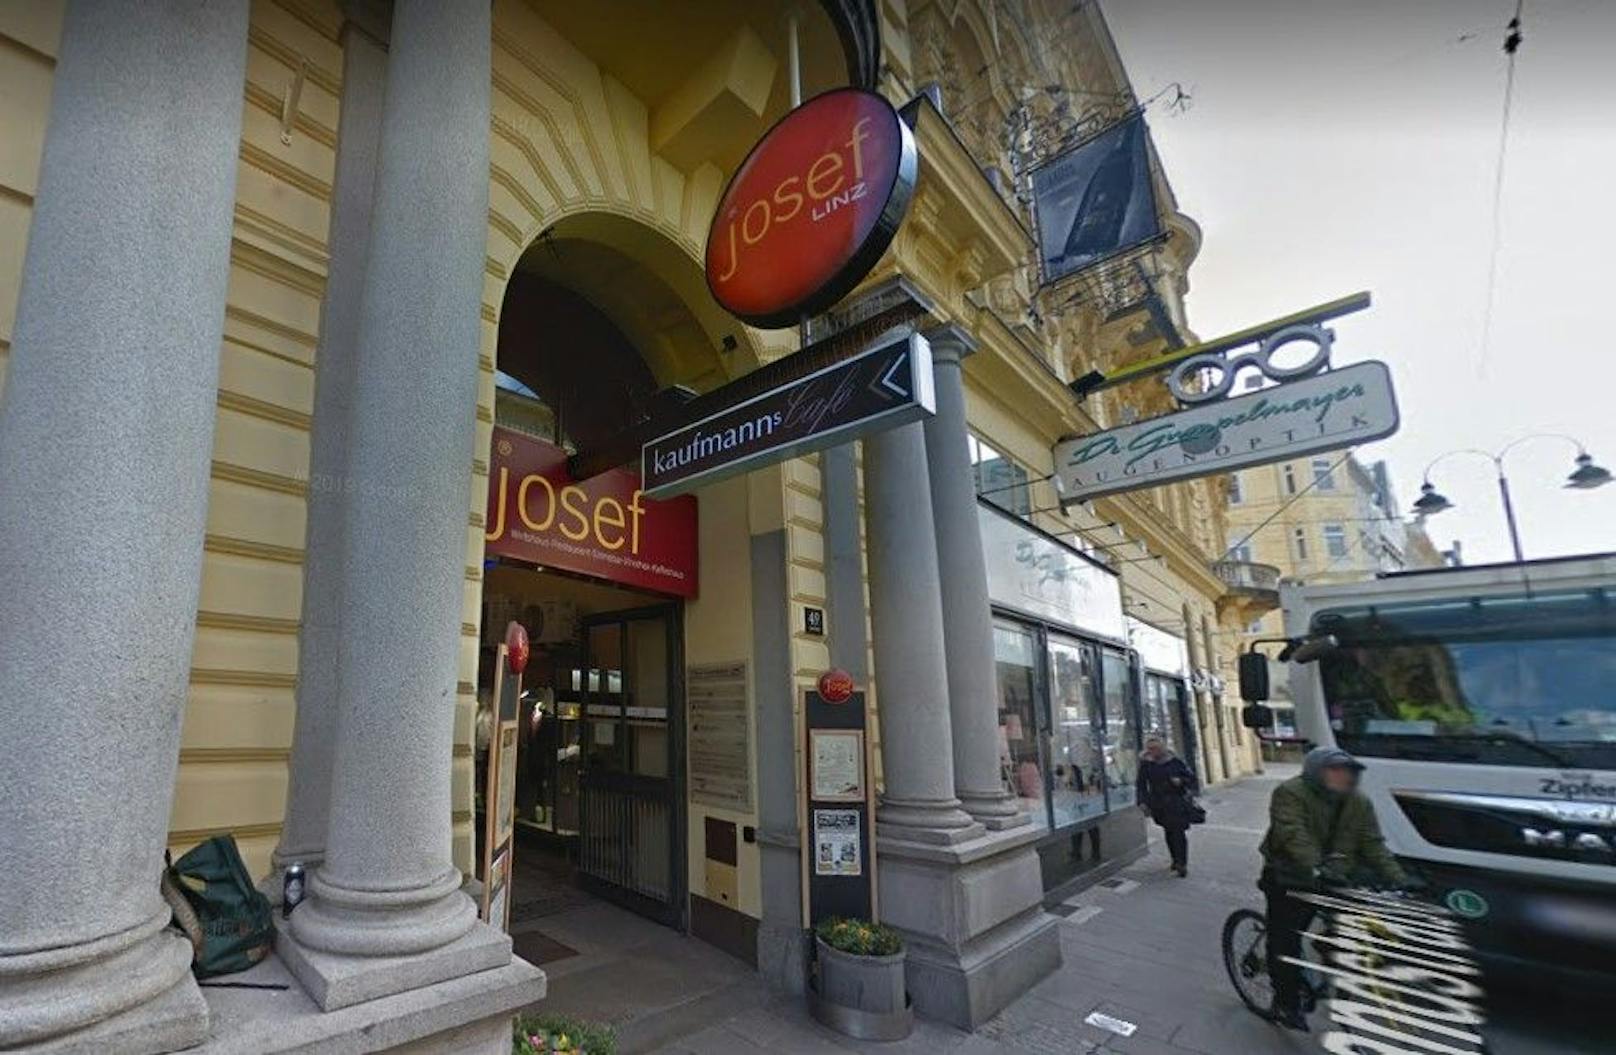 Der Chef des "Josef" in Linz sucht einen Restaurantleiter oder eine Restaurantleiterin.